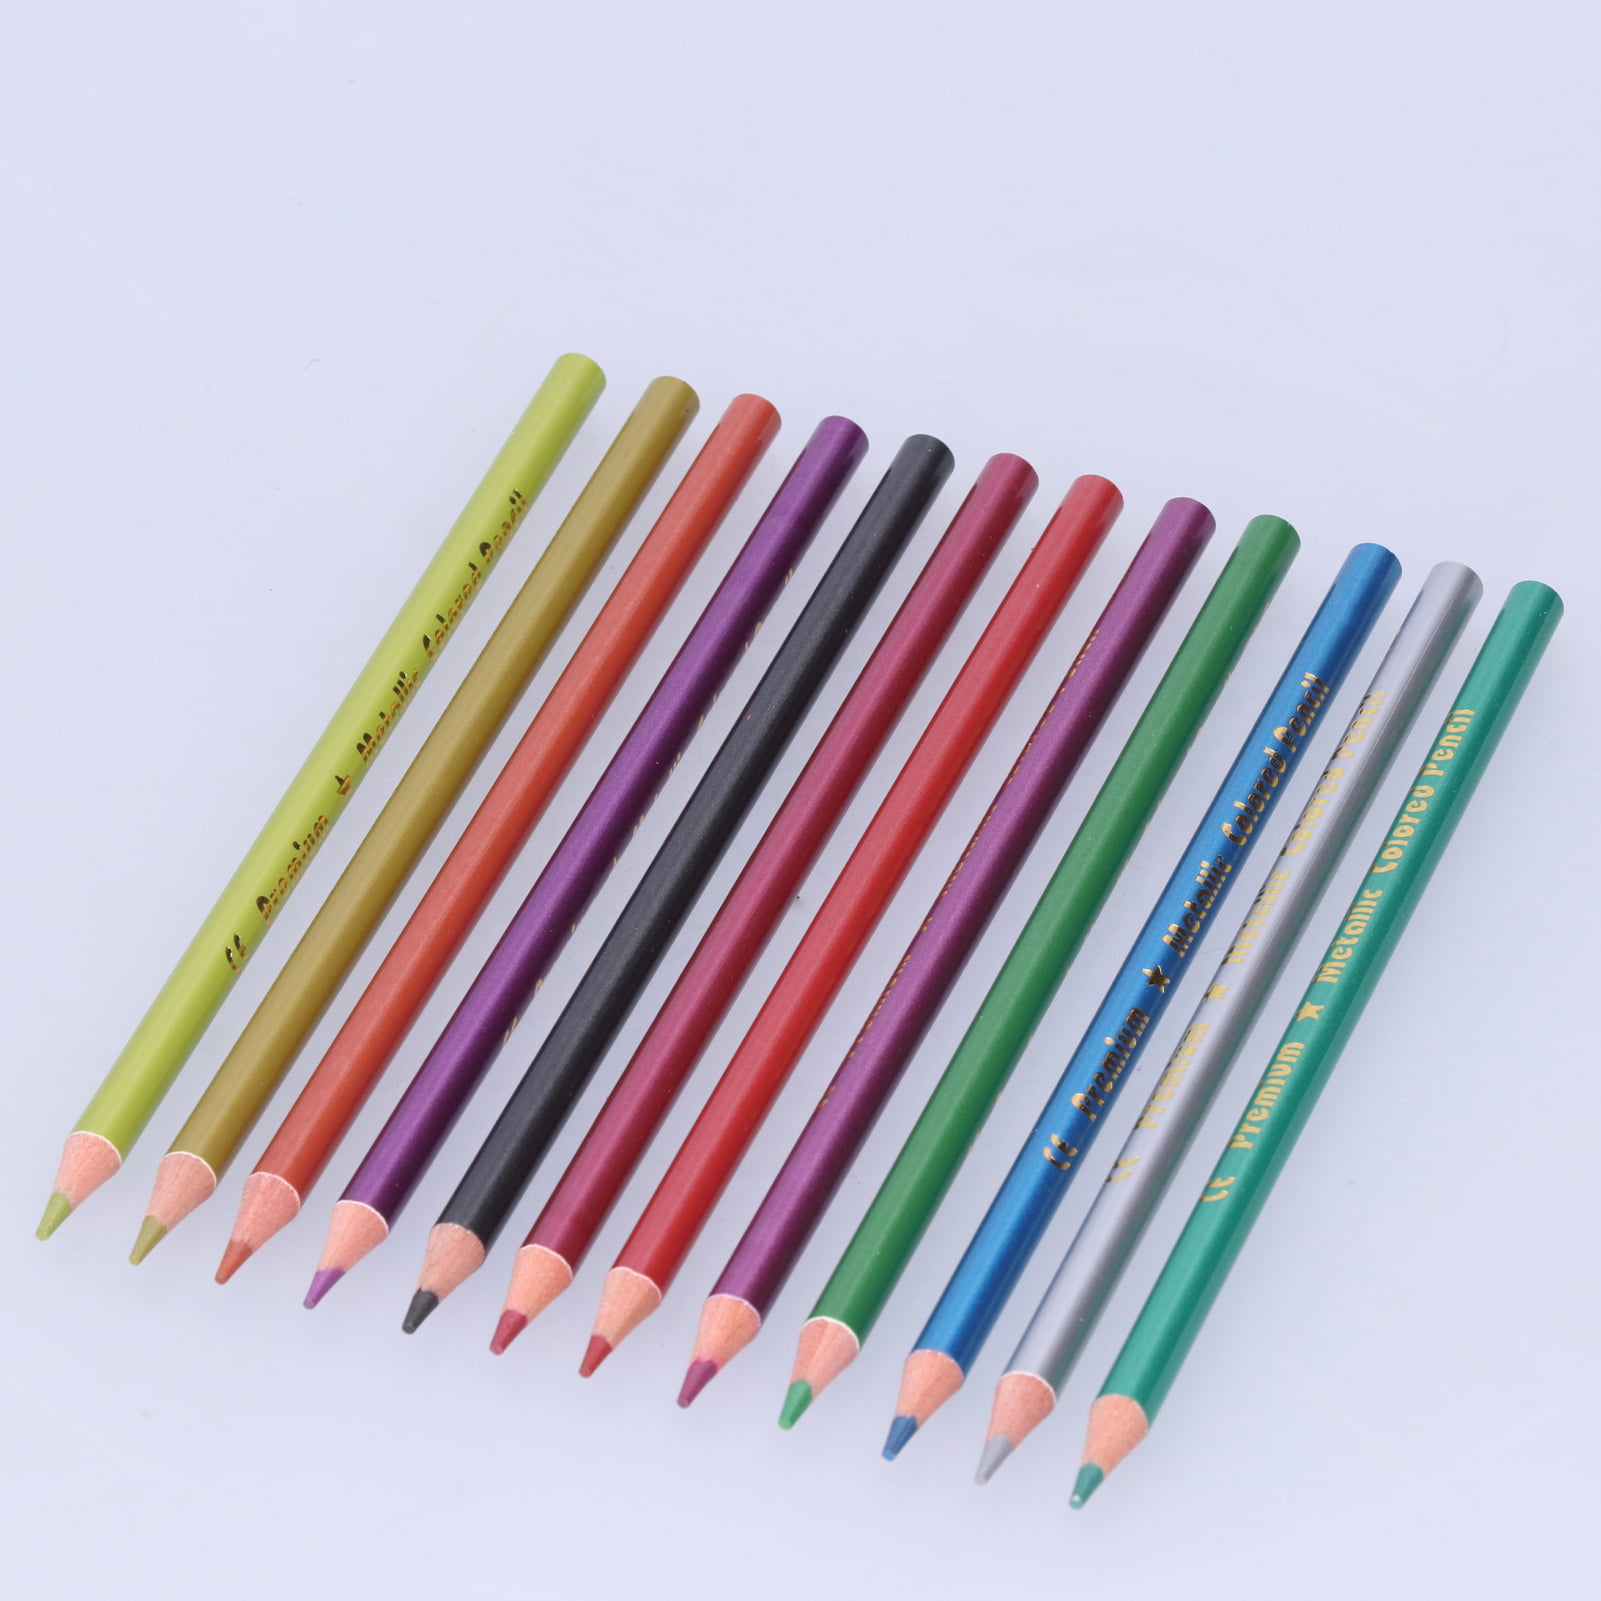 Metal Waterborne Pencil, Metal Colored Pencils, Wax Colored Pencils